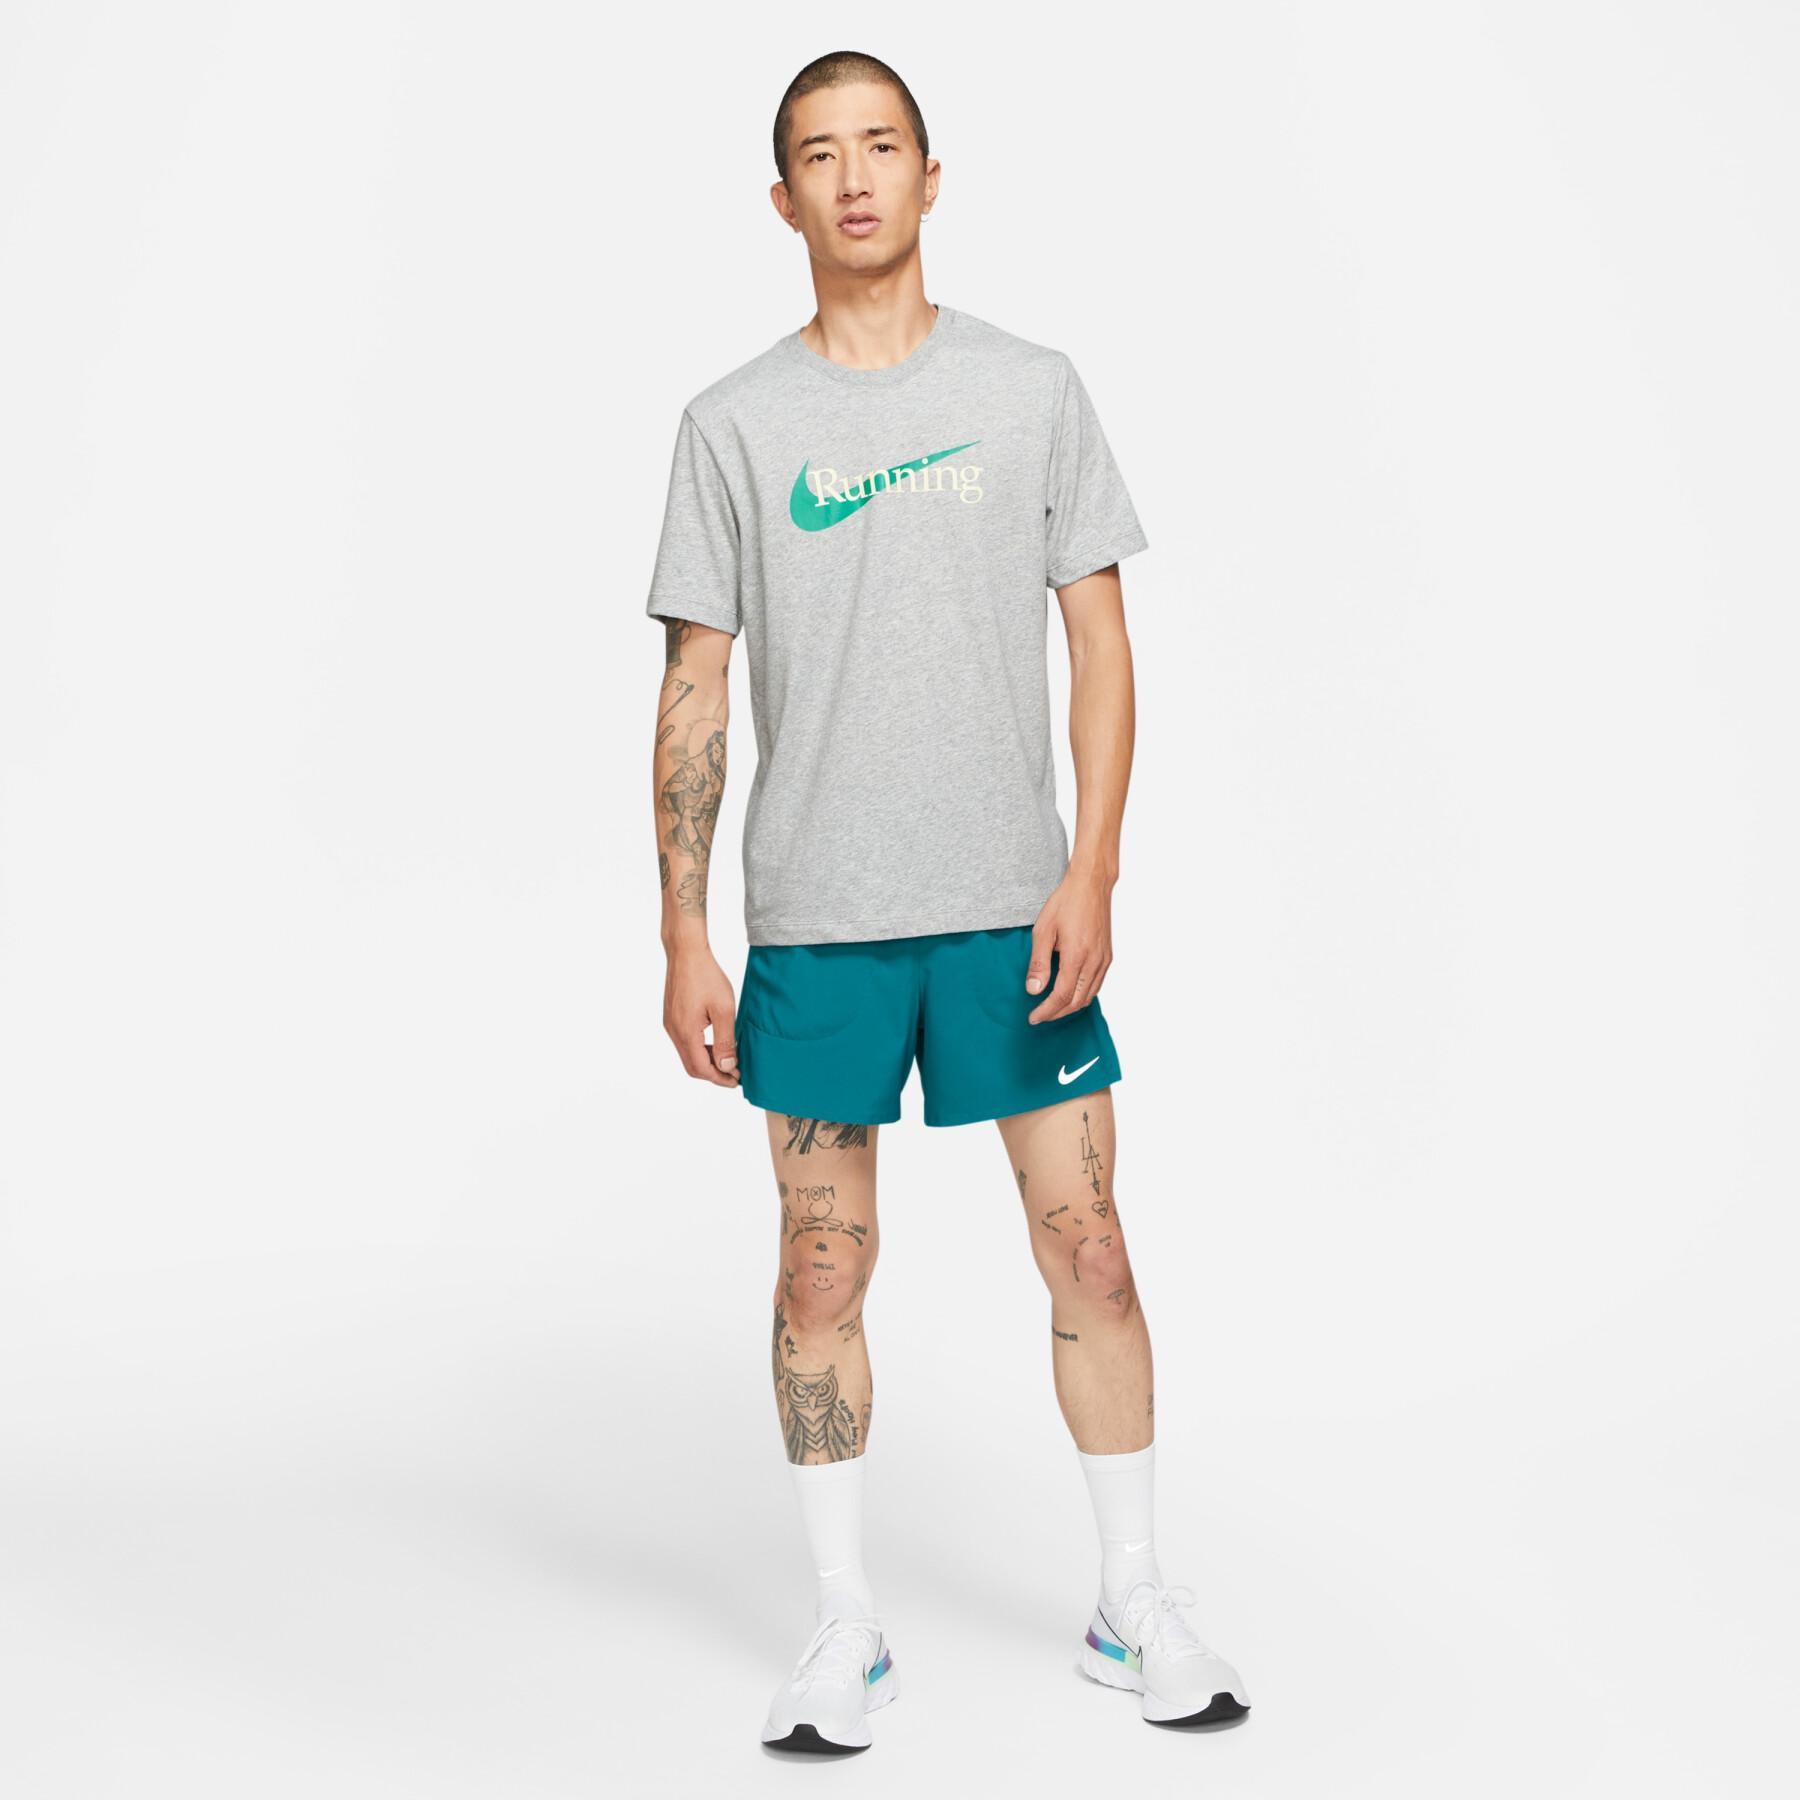 T-shirt Nike Dri-FIT